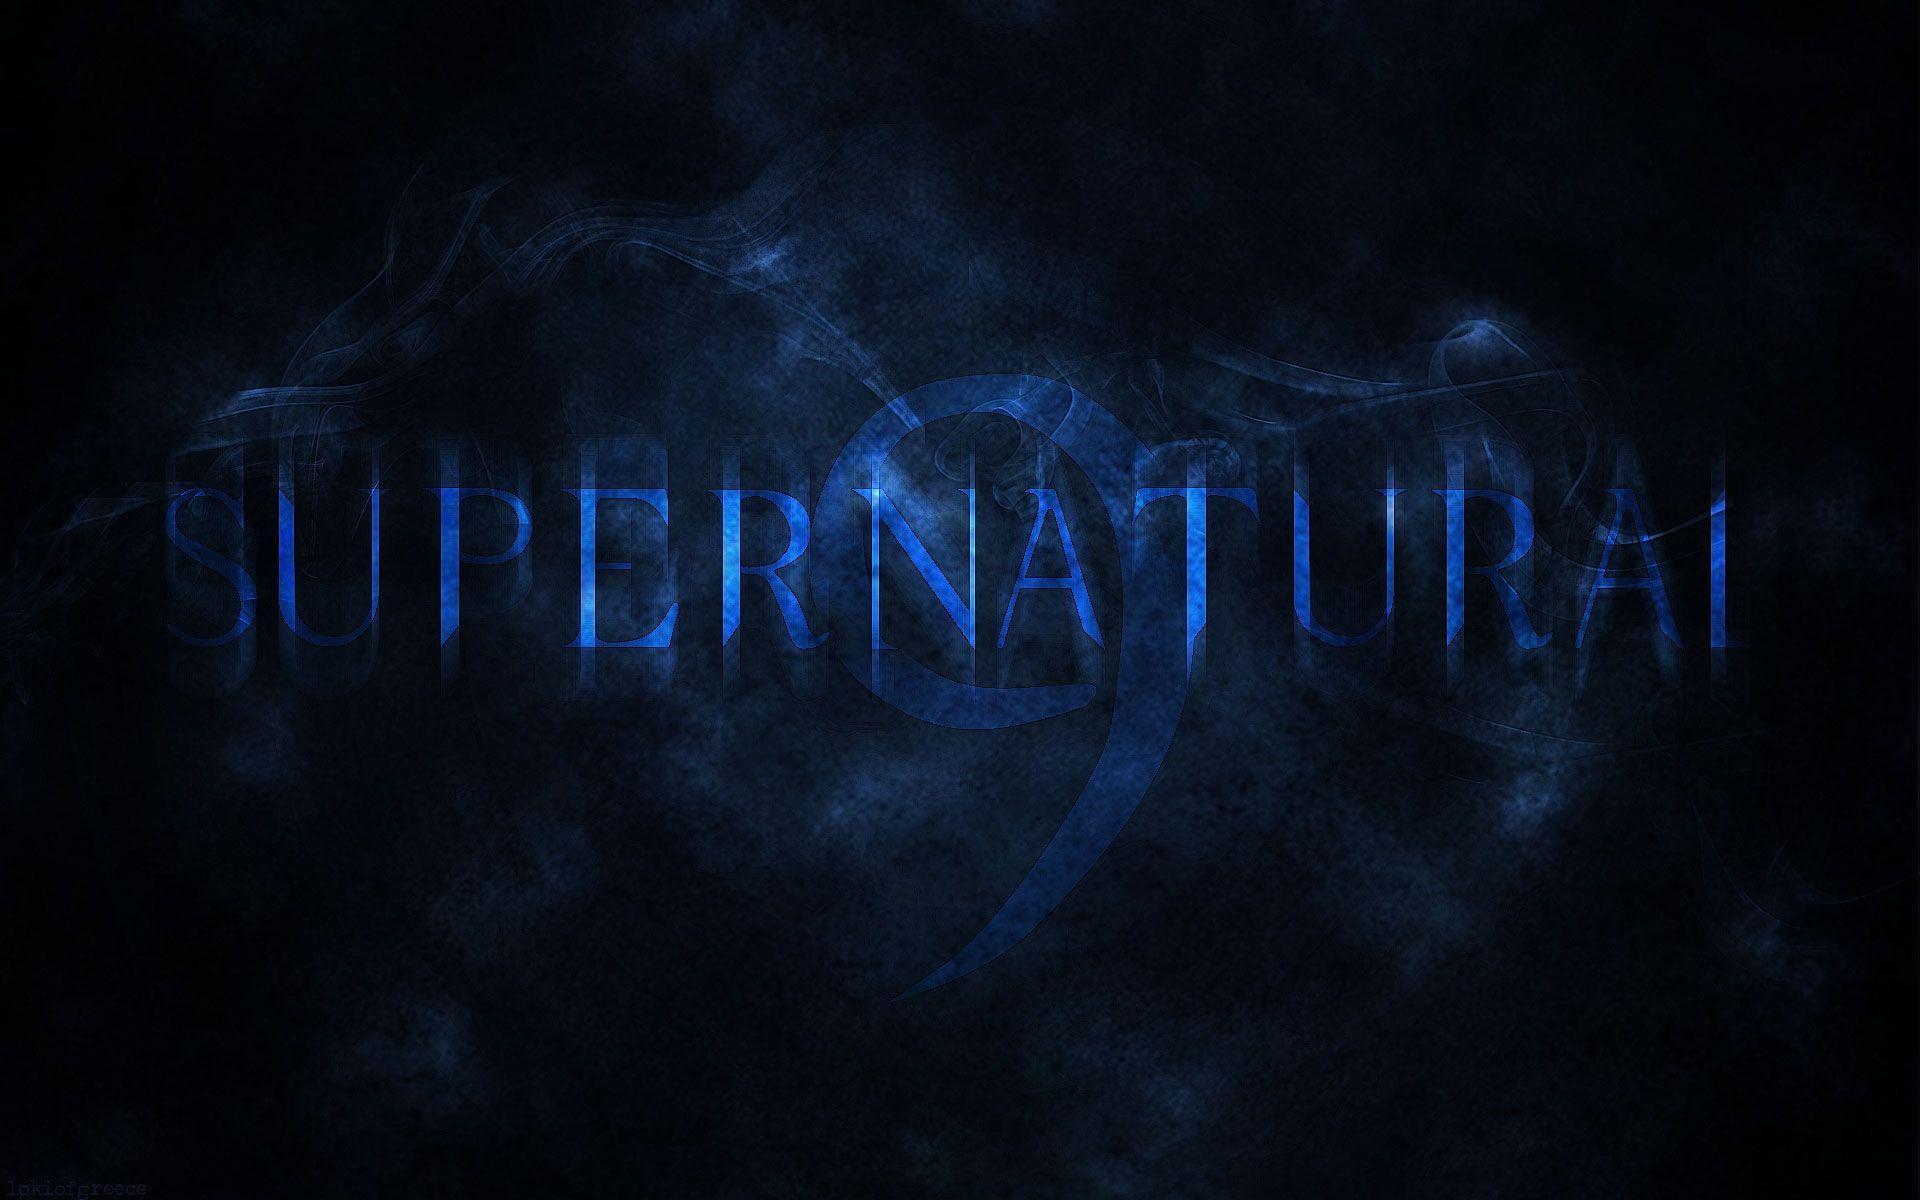 Supernatural Season 9 Logo Wallpaper free desktop background